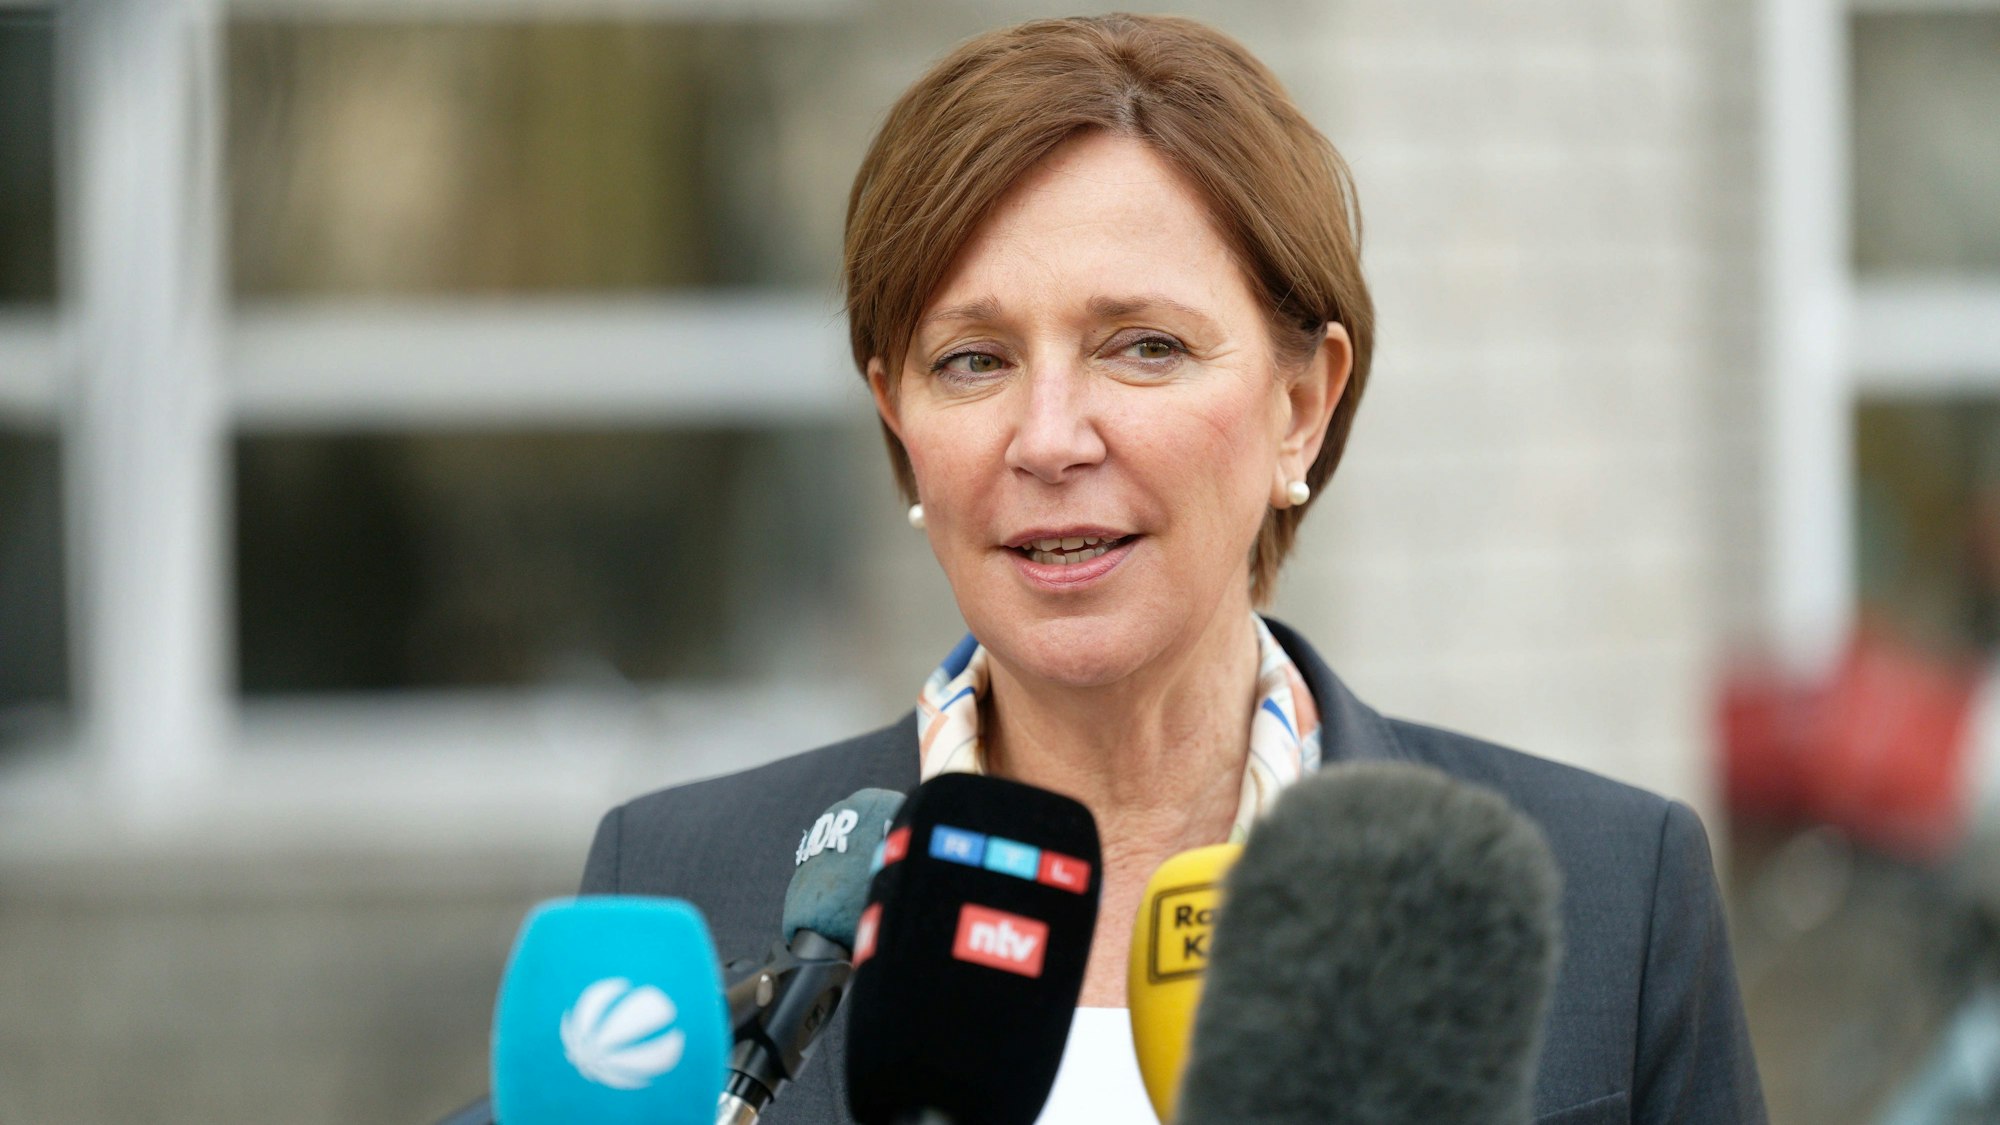 NRW-Schulministerin Yvonne Gebauer gibt en Interview vor Journalistinnen und Journalisten.